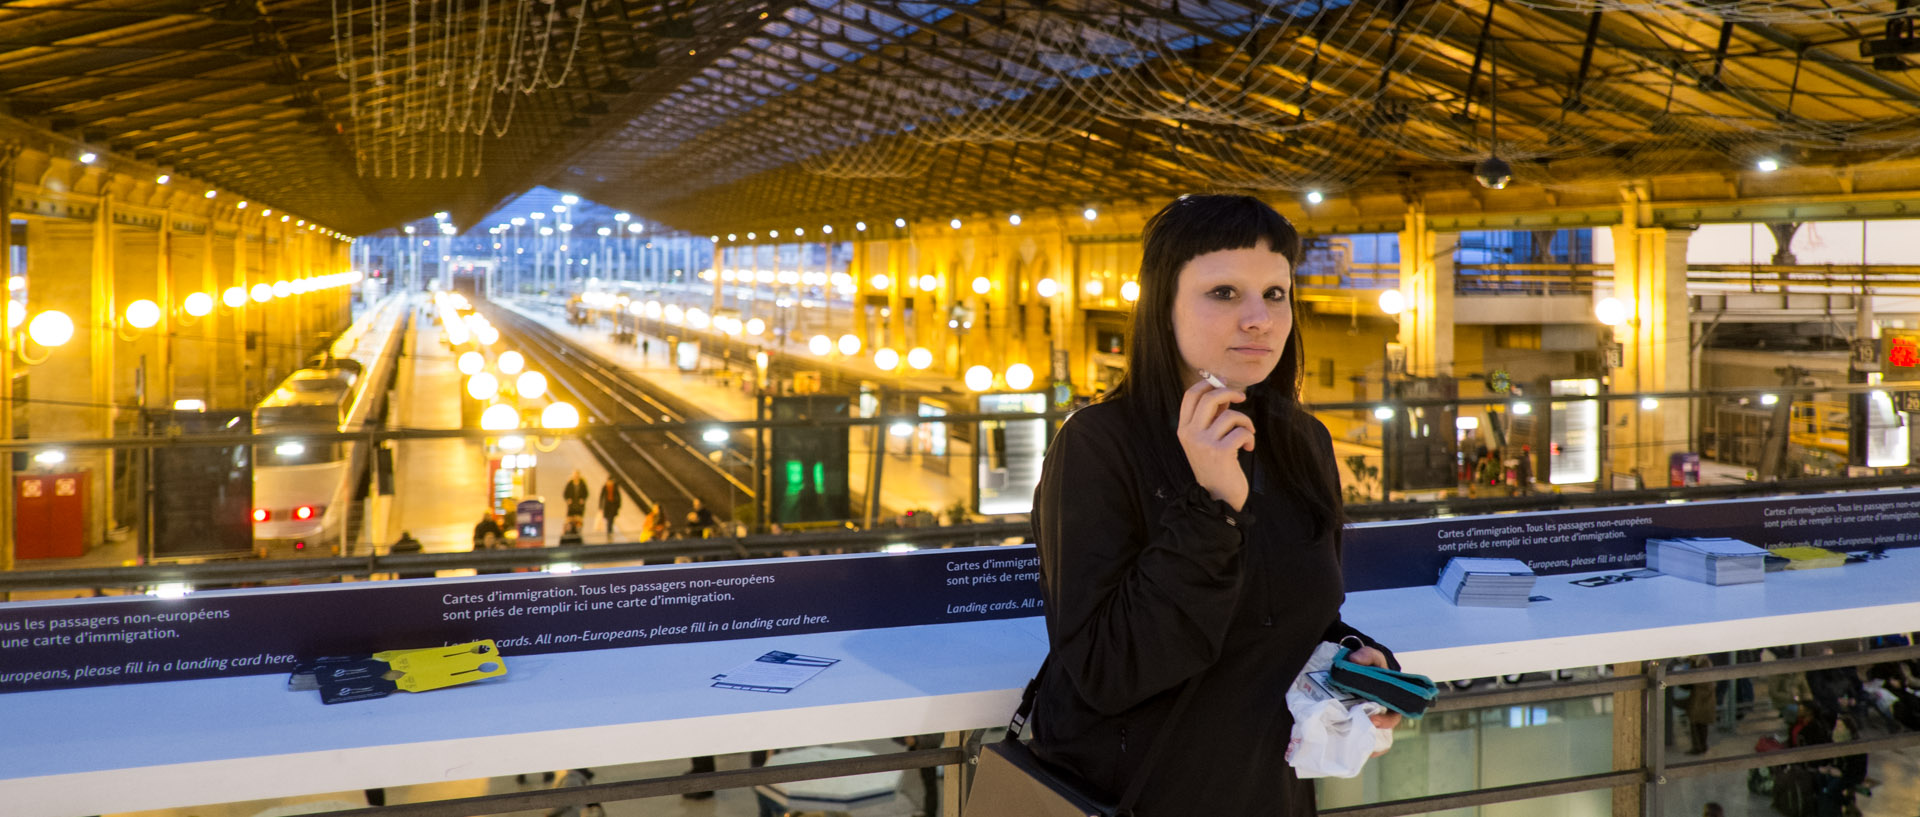 Jeune femme dans le centre d'embarquement pour l'Eurostar, gare du Nord, à Paris.